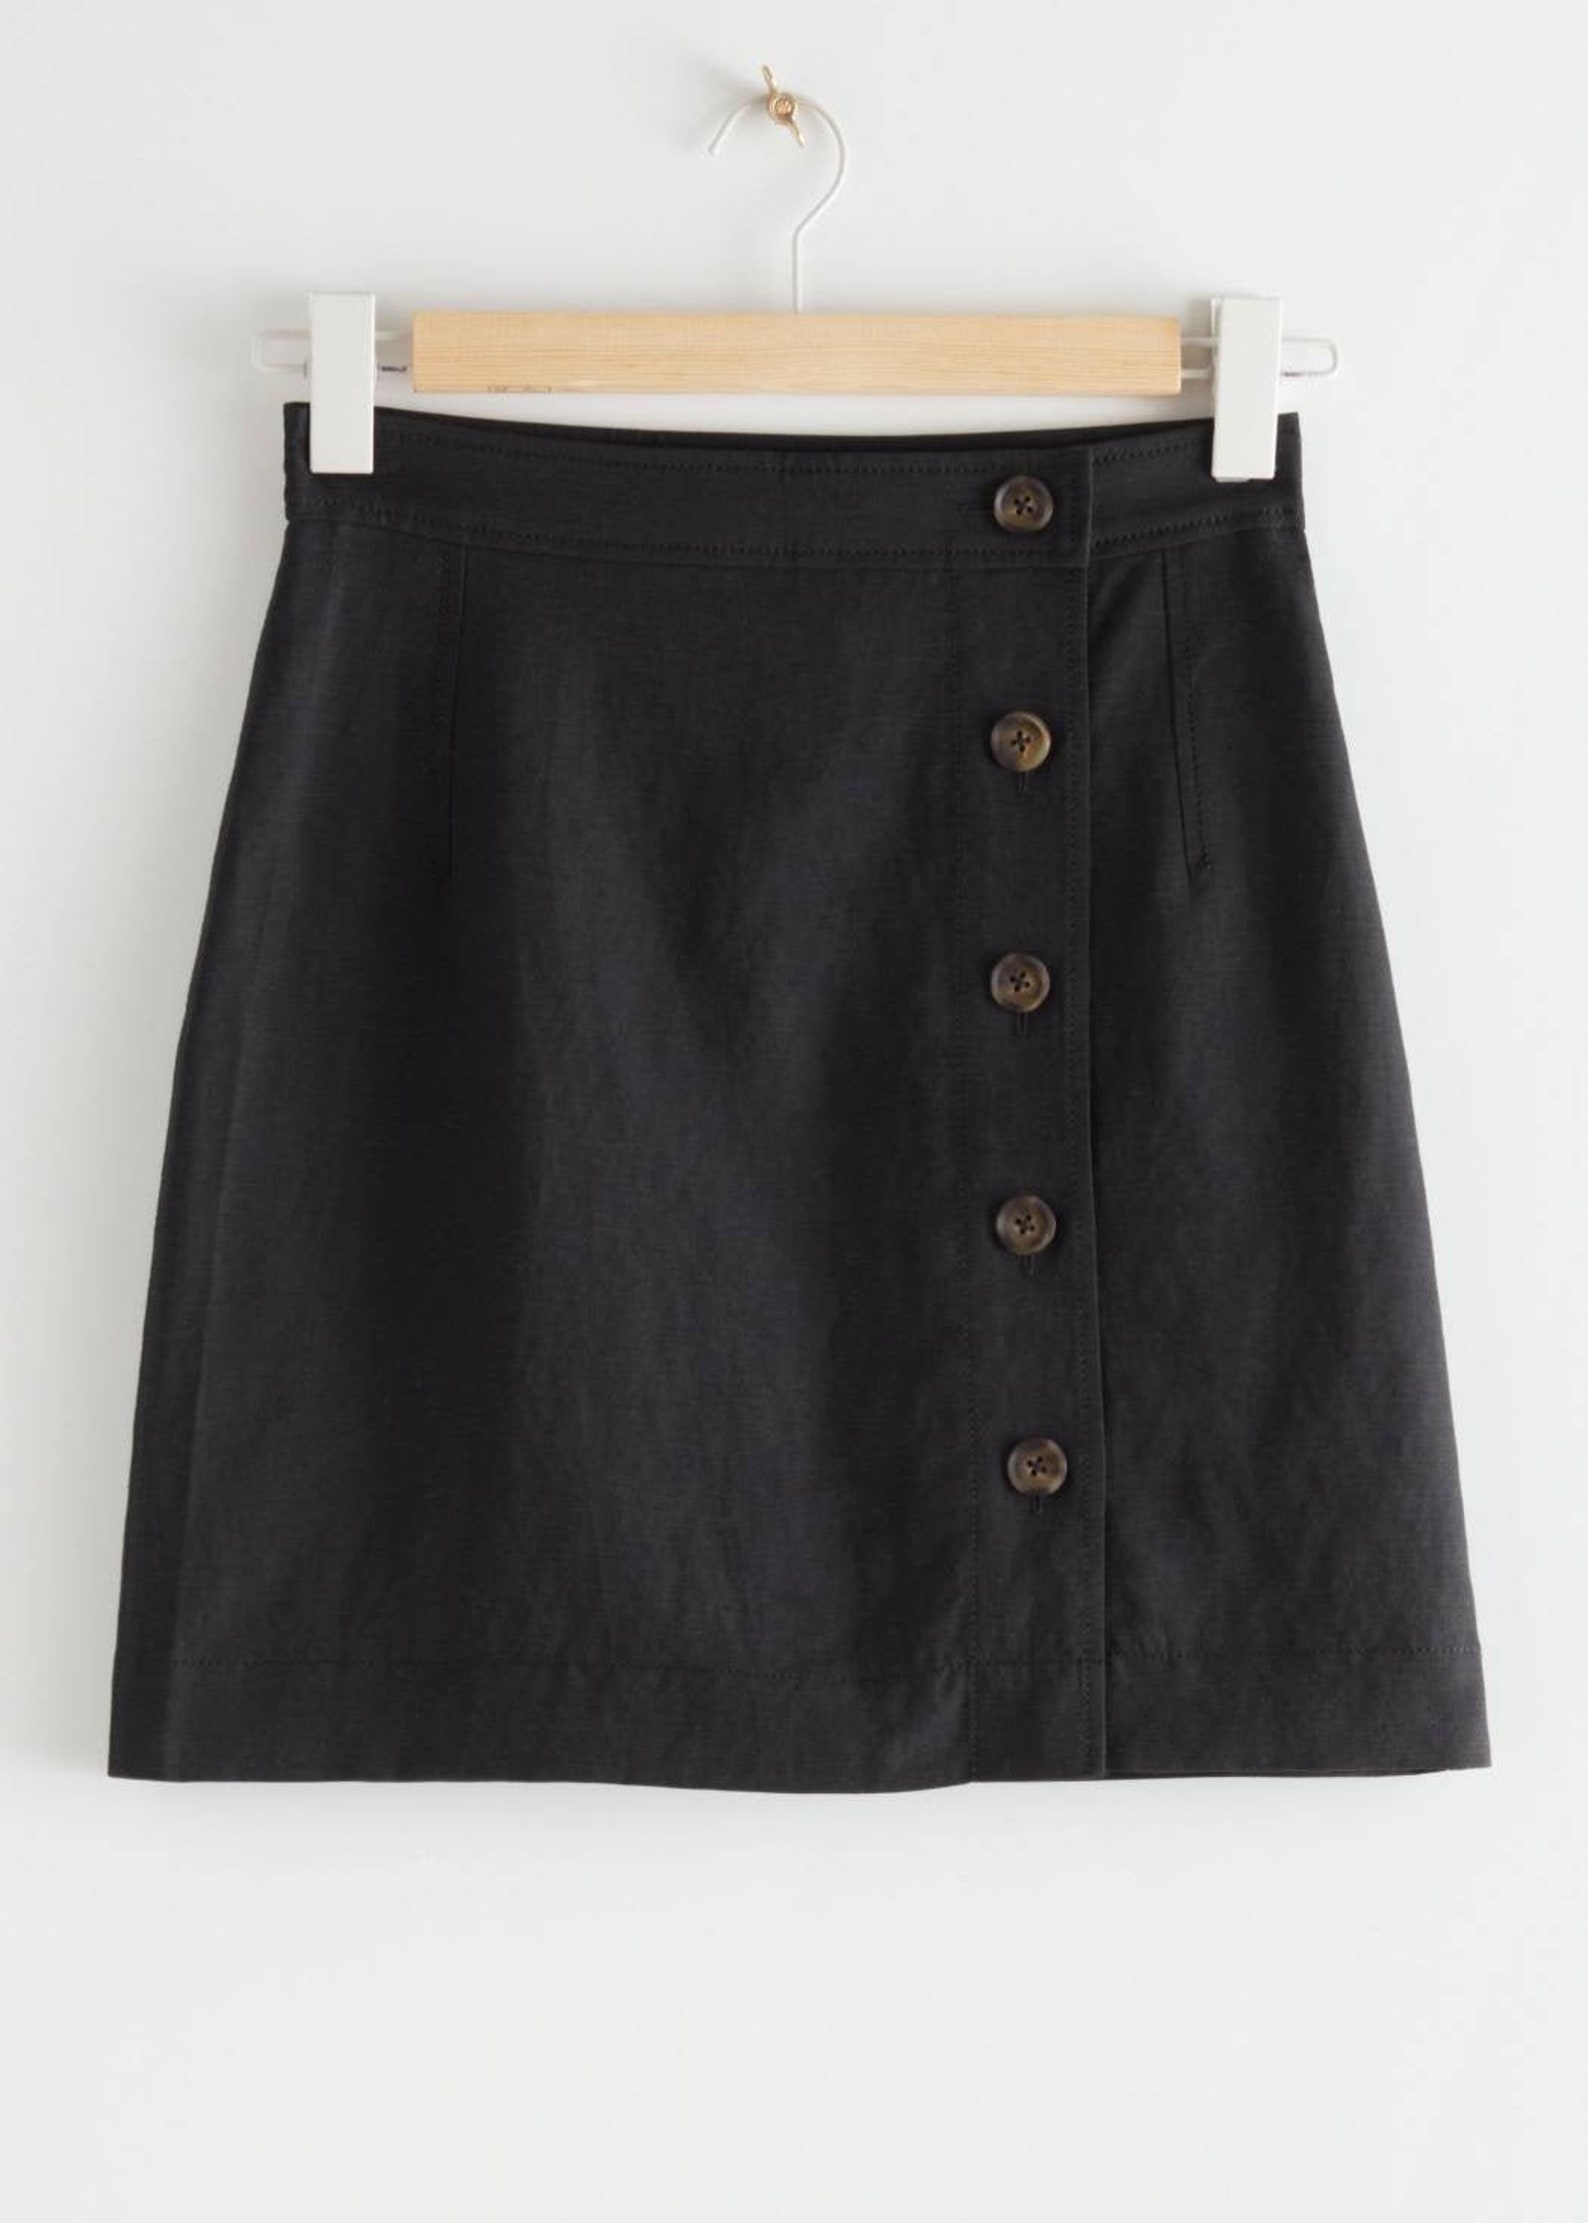 Black Linen Skirt Flared Panel Mini Linen Skirt Linen | Etsy